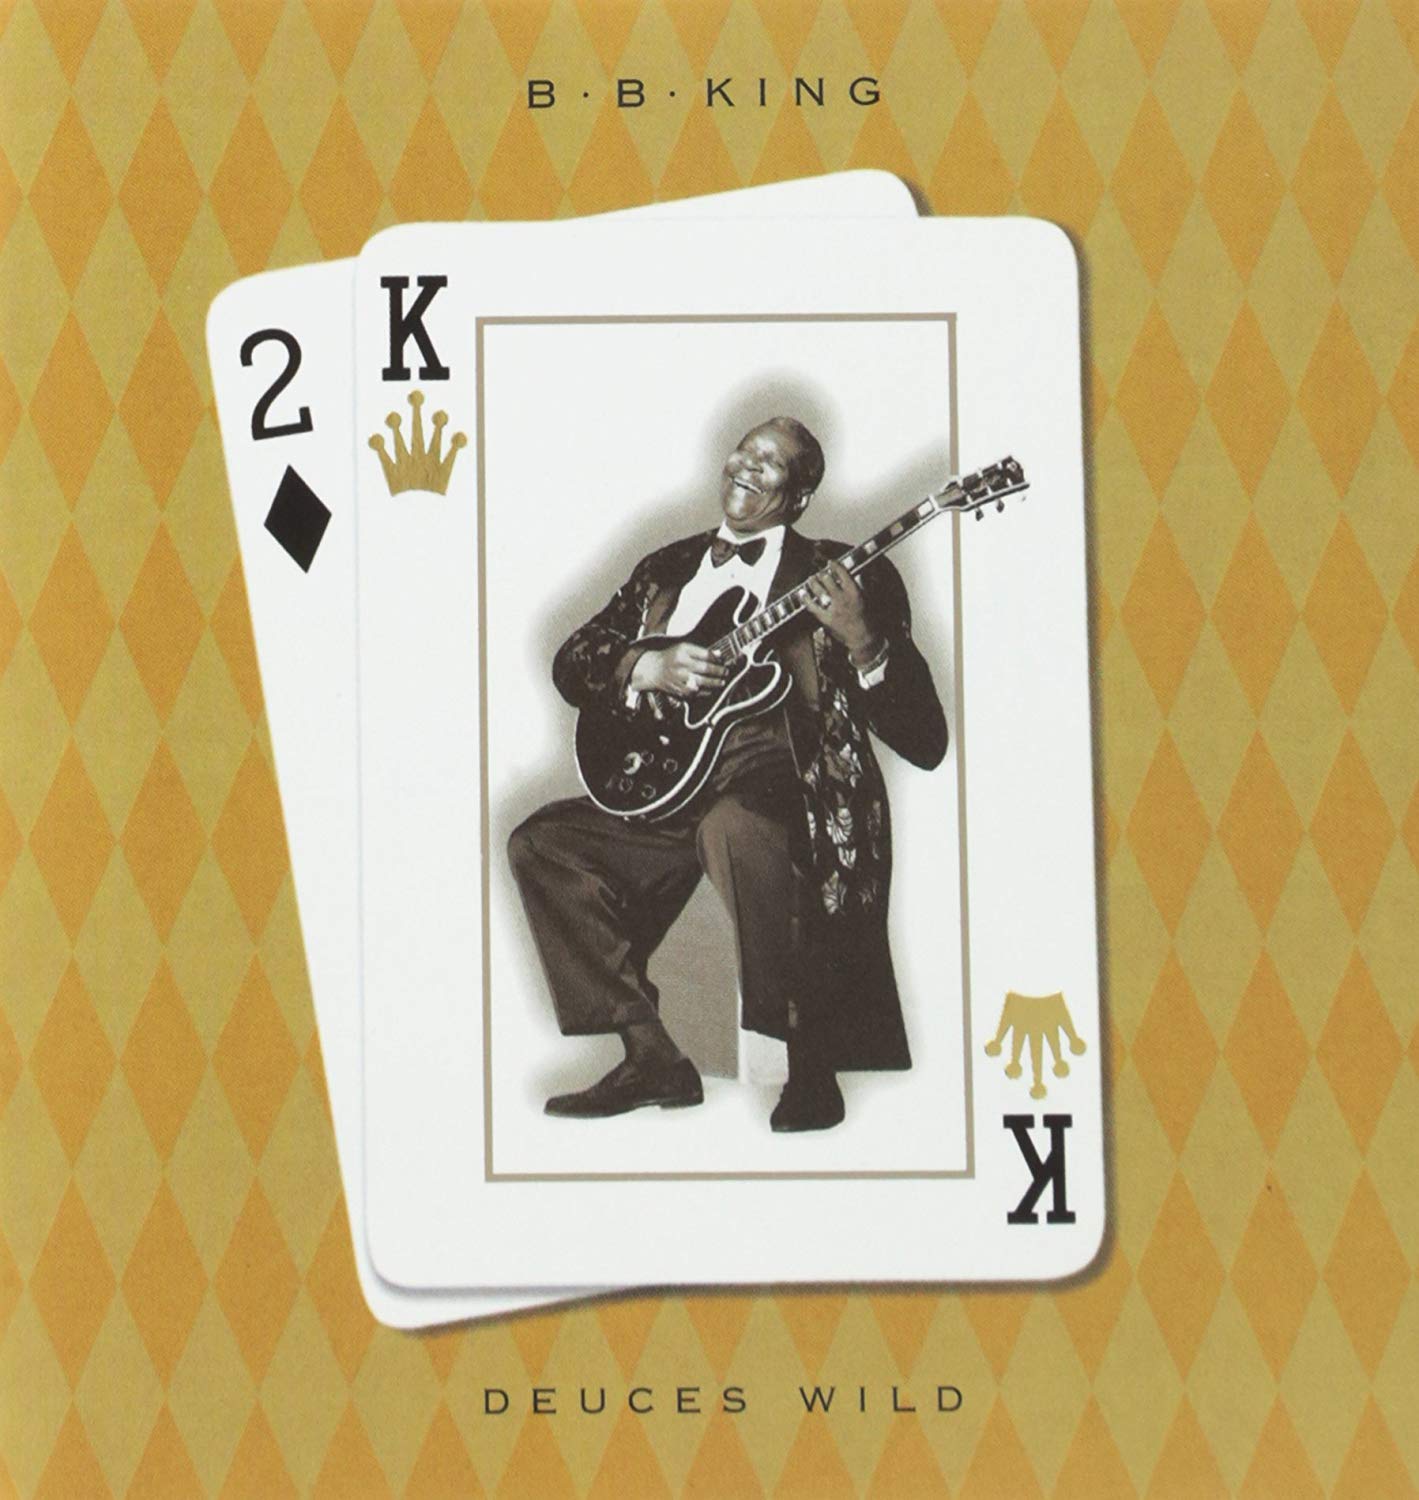 B.B. KING – Deuces Wild